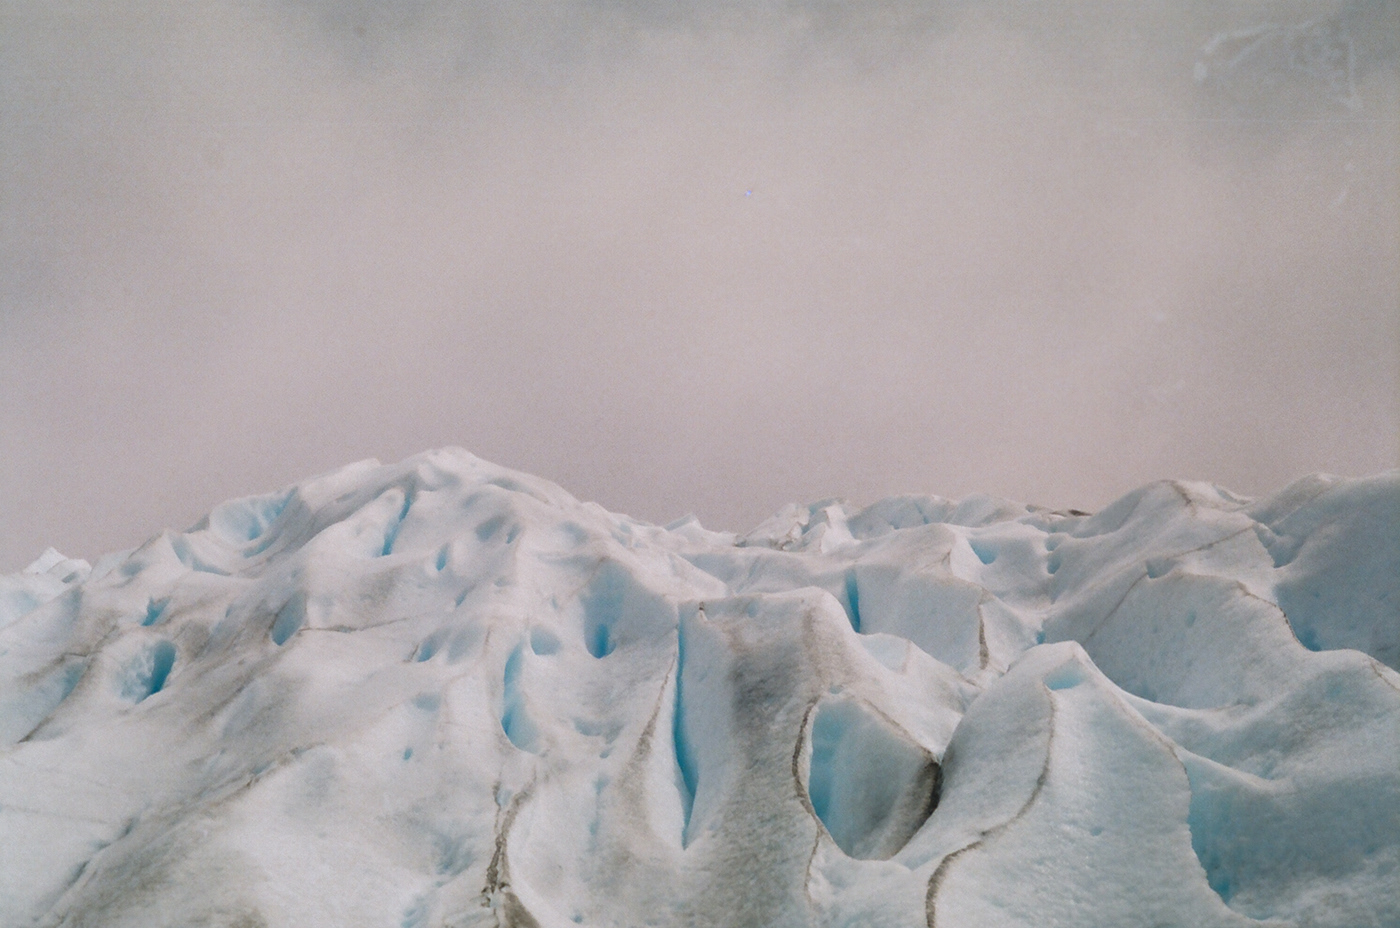 35mm 35mm film analogo argentina Fotografia fotografia analogica glaciar perito moreno